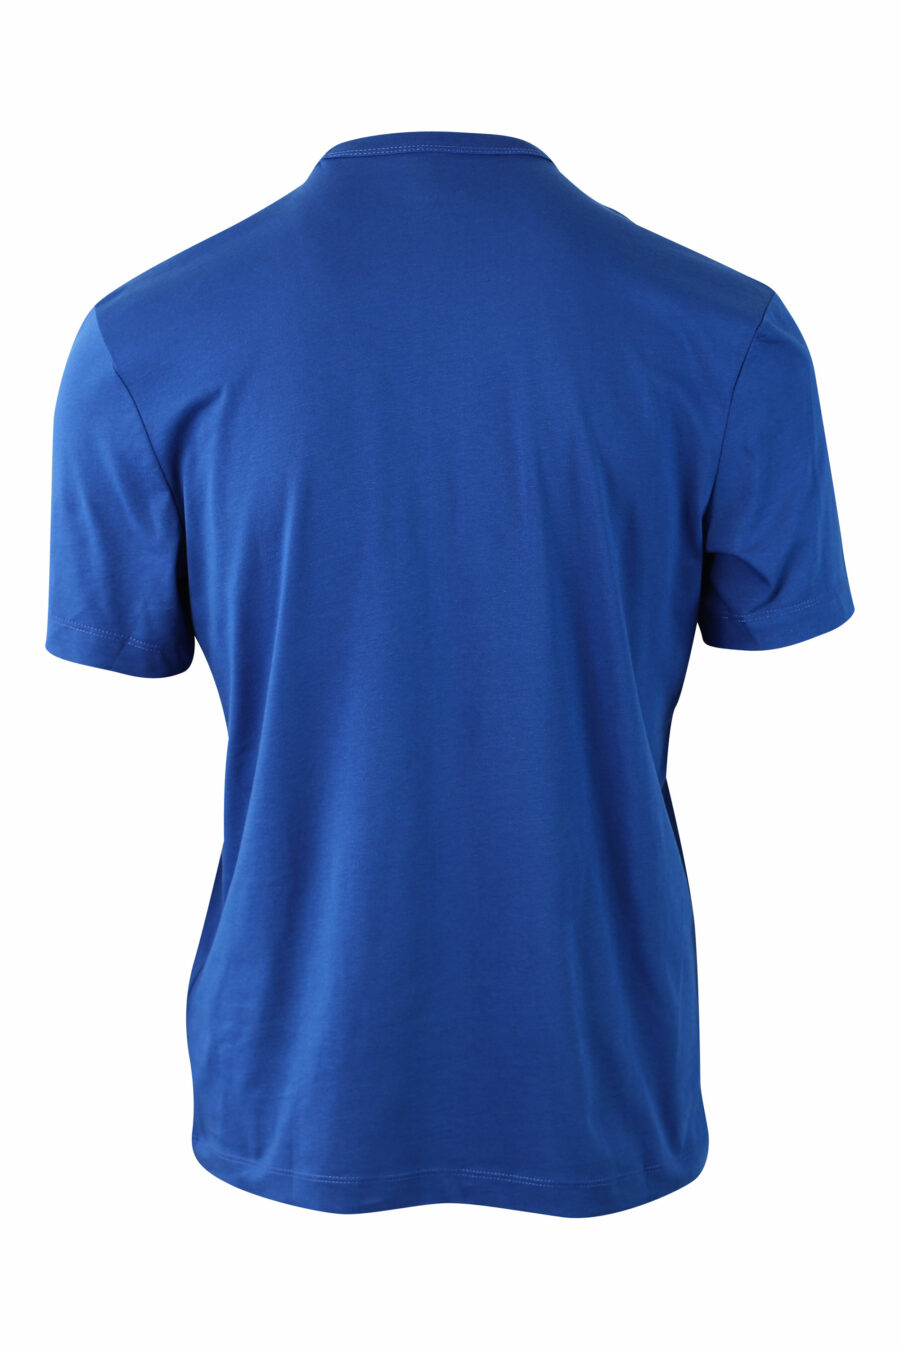 Camiseta azul con minilogo escudo - IMG 0006